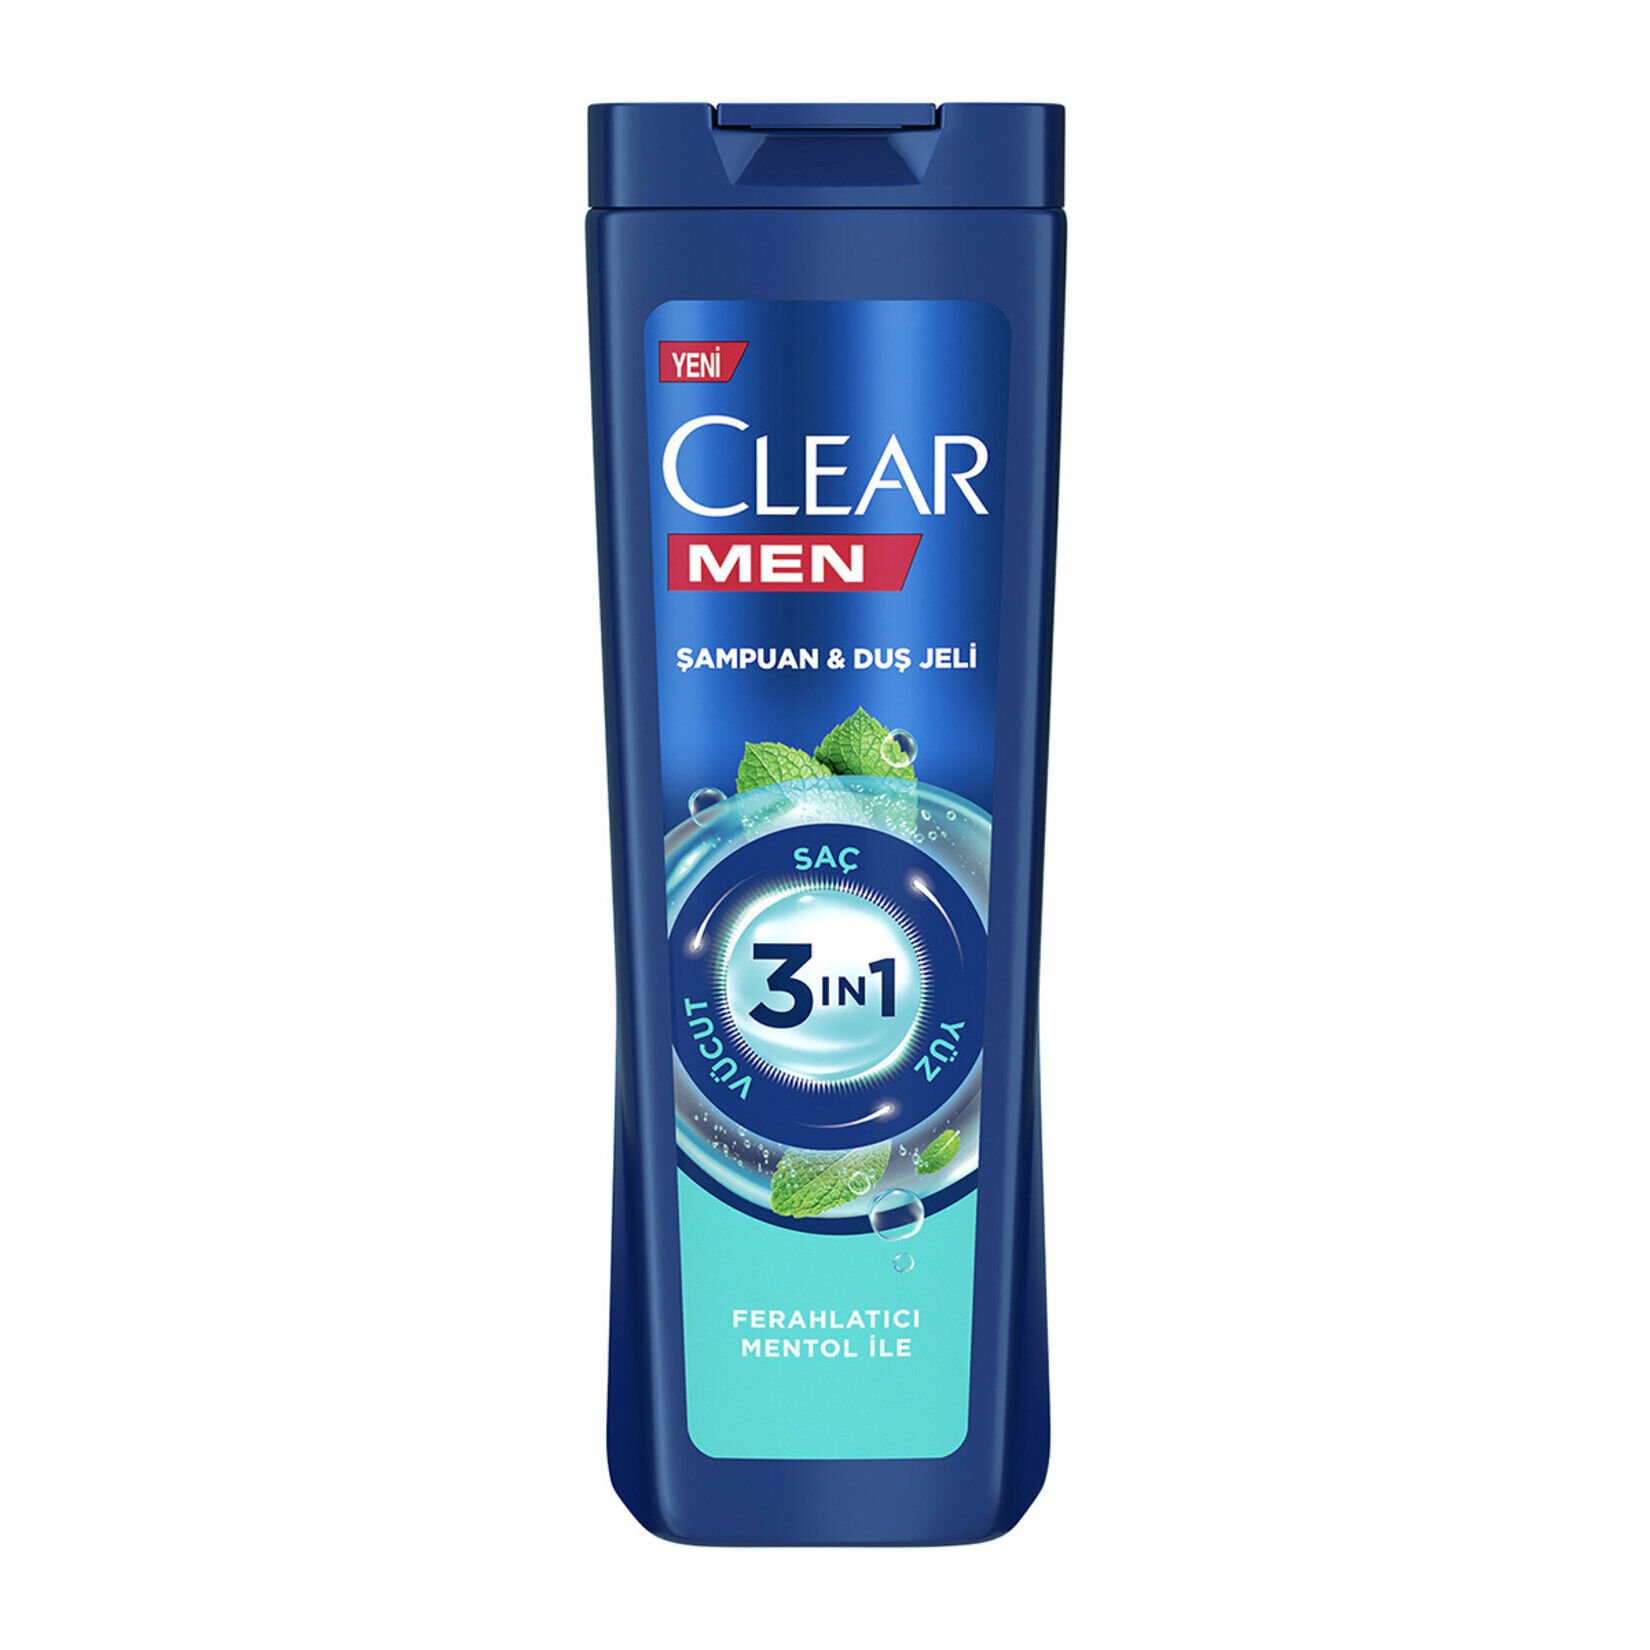 Clear Men Şampuan Duş Jeli Ferahlatıcı Men 350ml